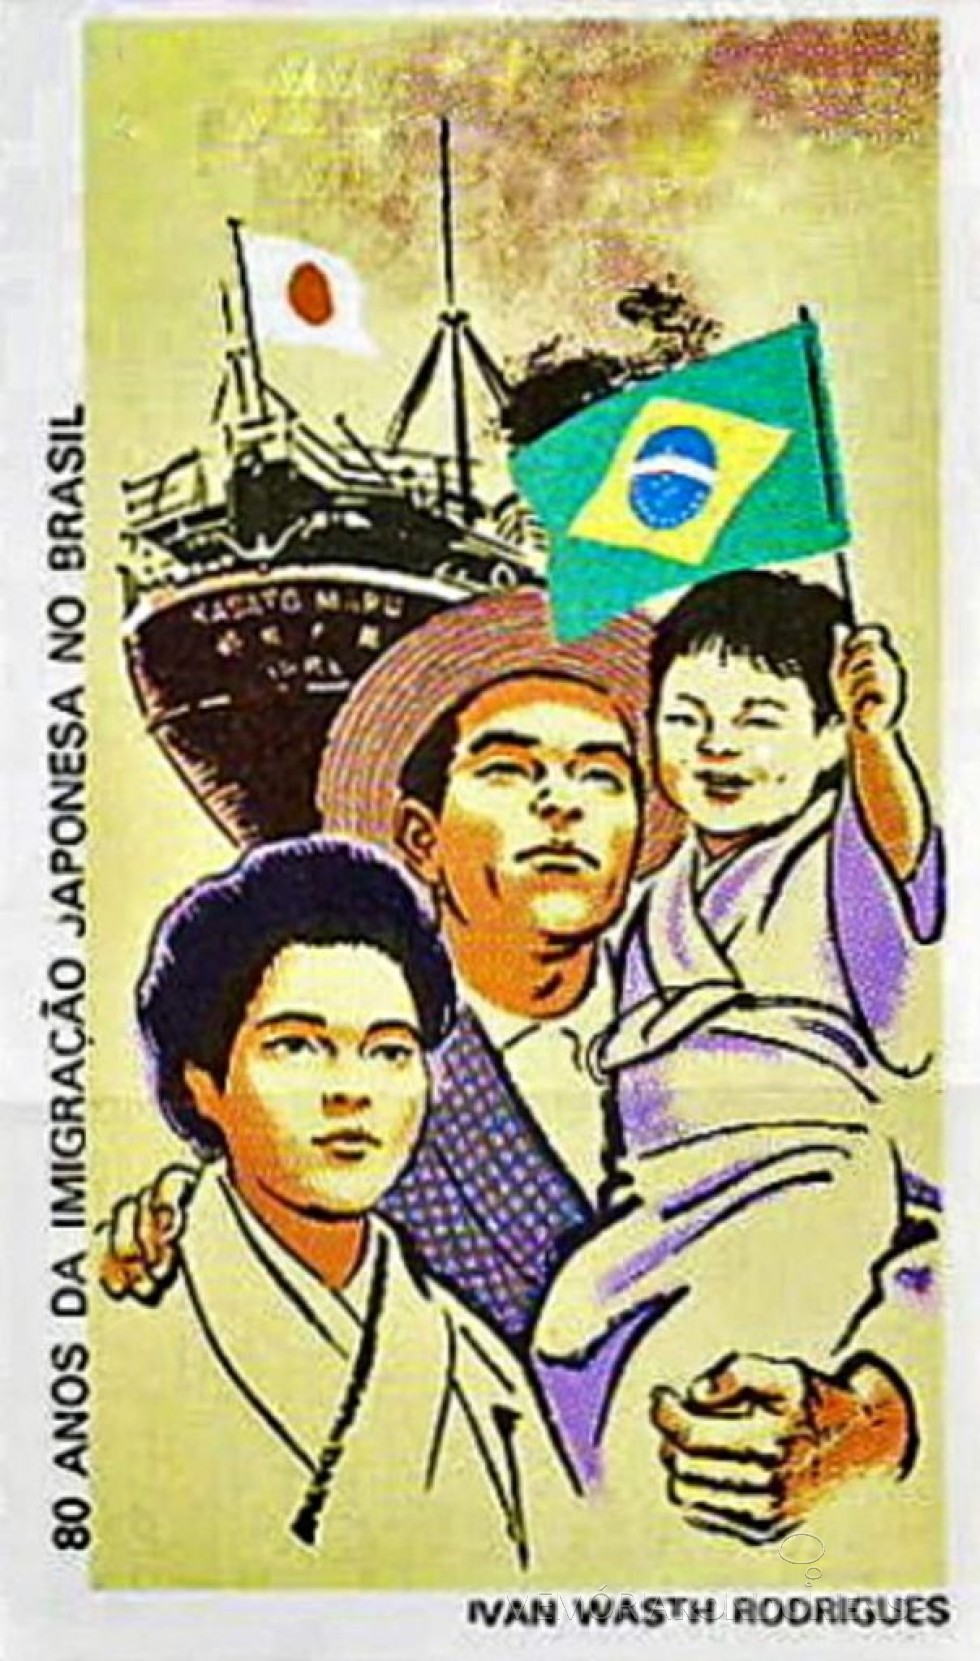 Cartaz alusivo ao 80º Aniversário da Imigração Japonesa no Brasil.
Imagem: Acervo O Passado do Brasil/Facebbok - FOTO 5 - 